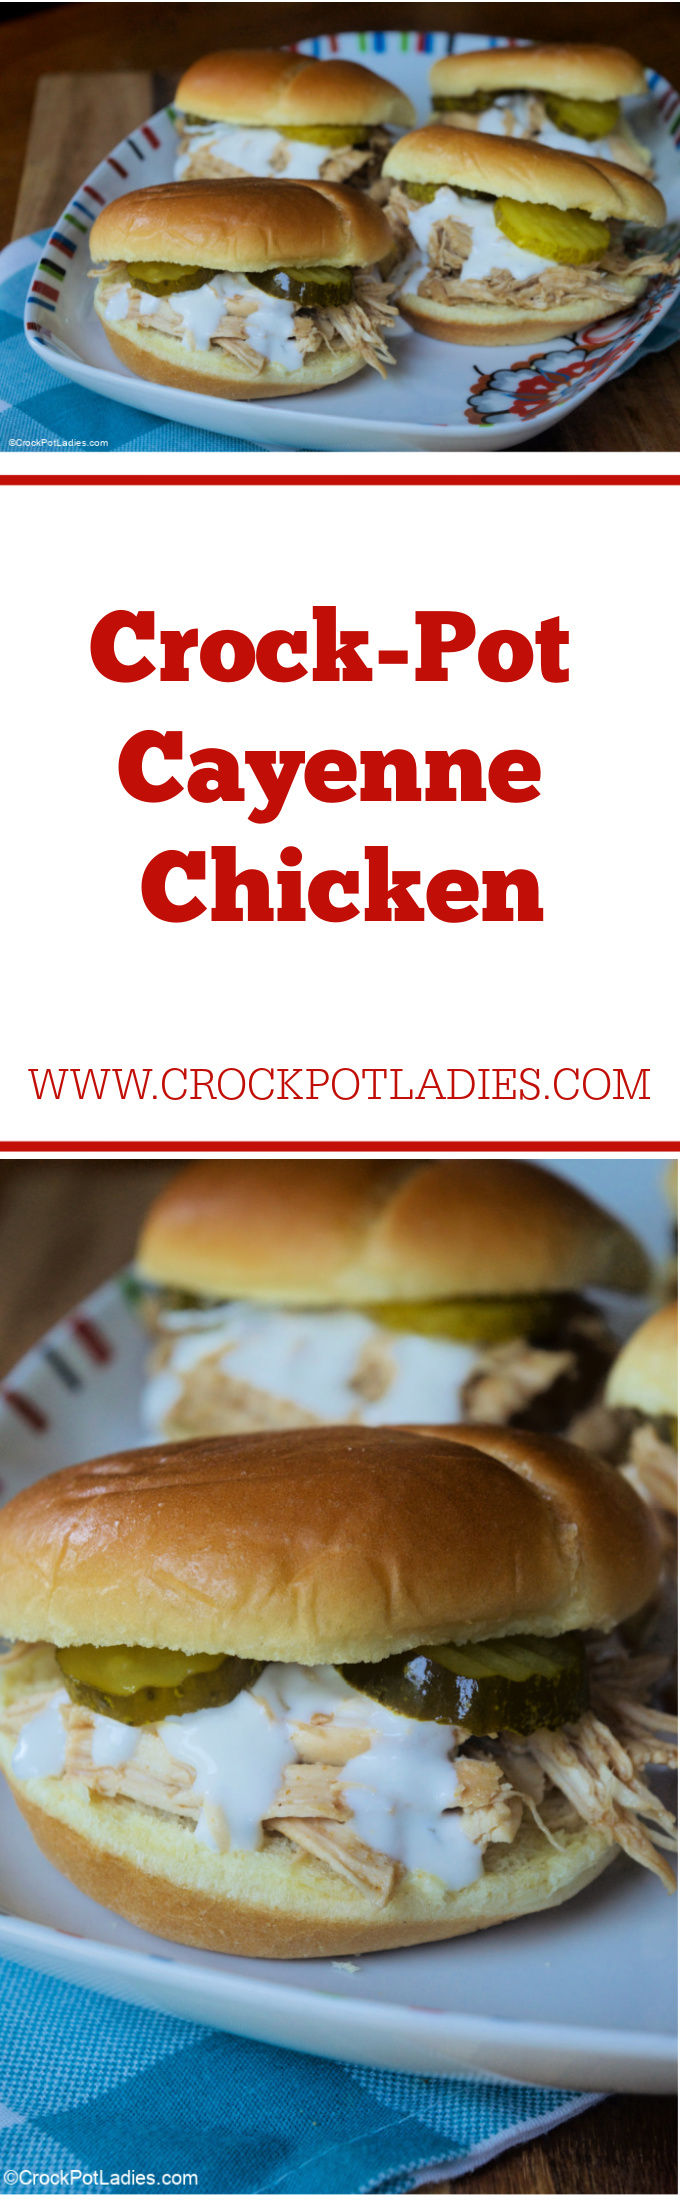 Crock-Pot Cayenne Chicken